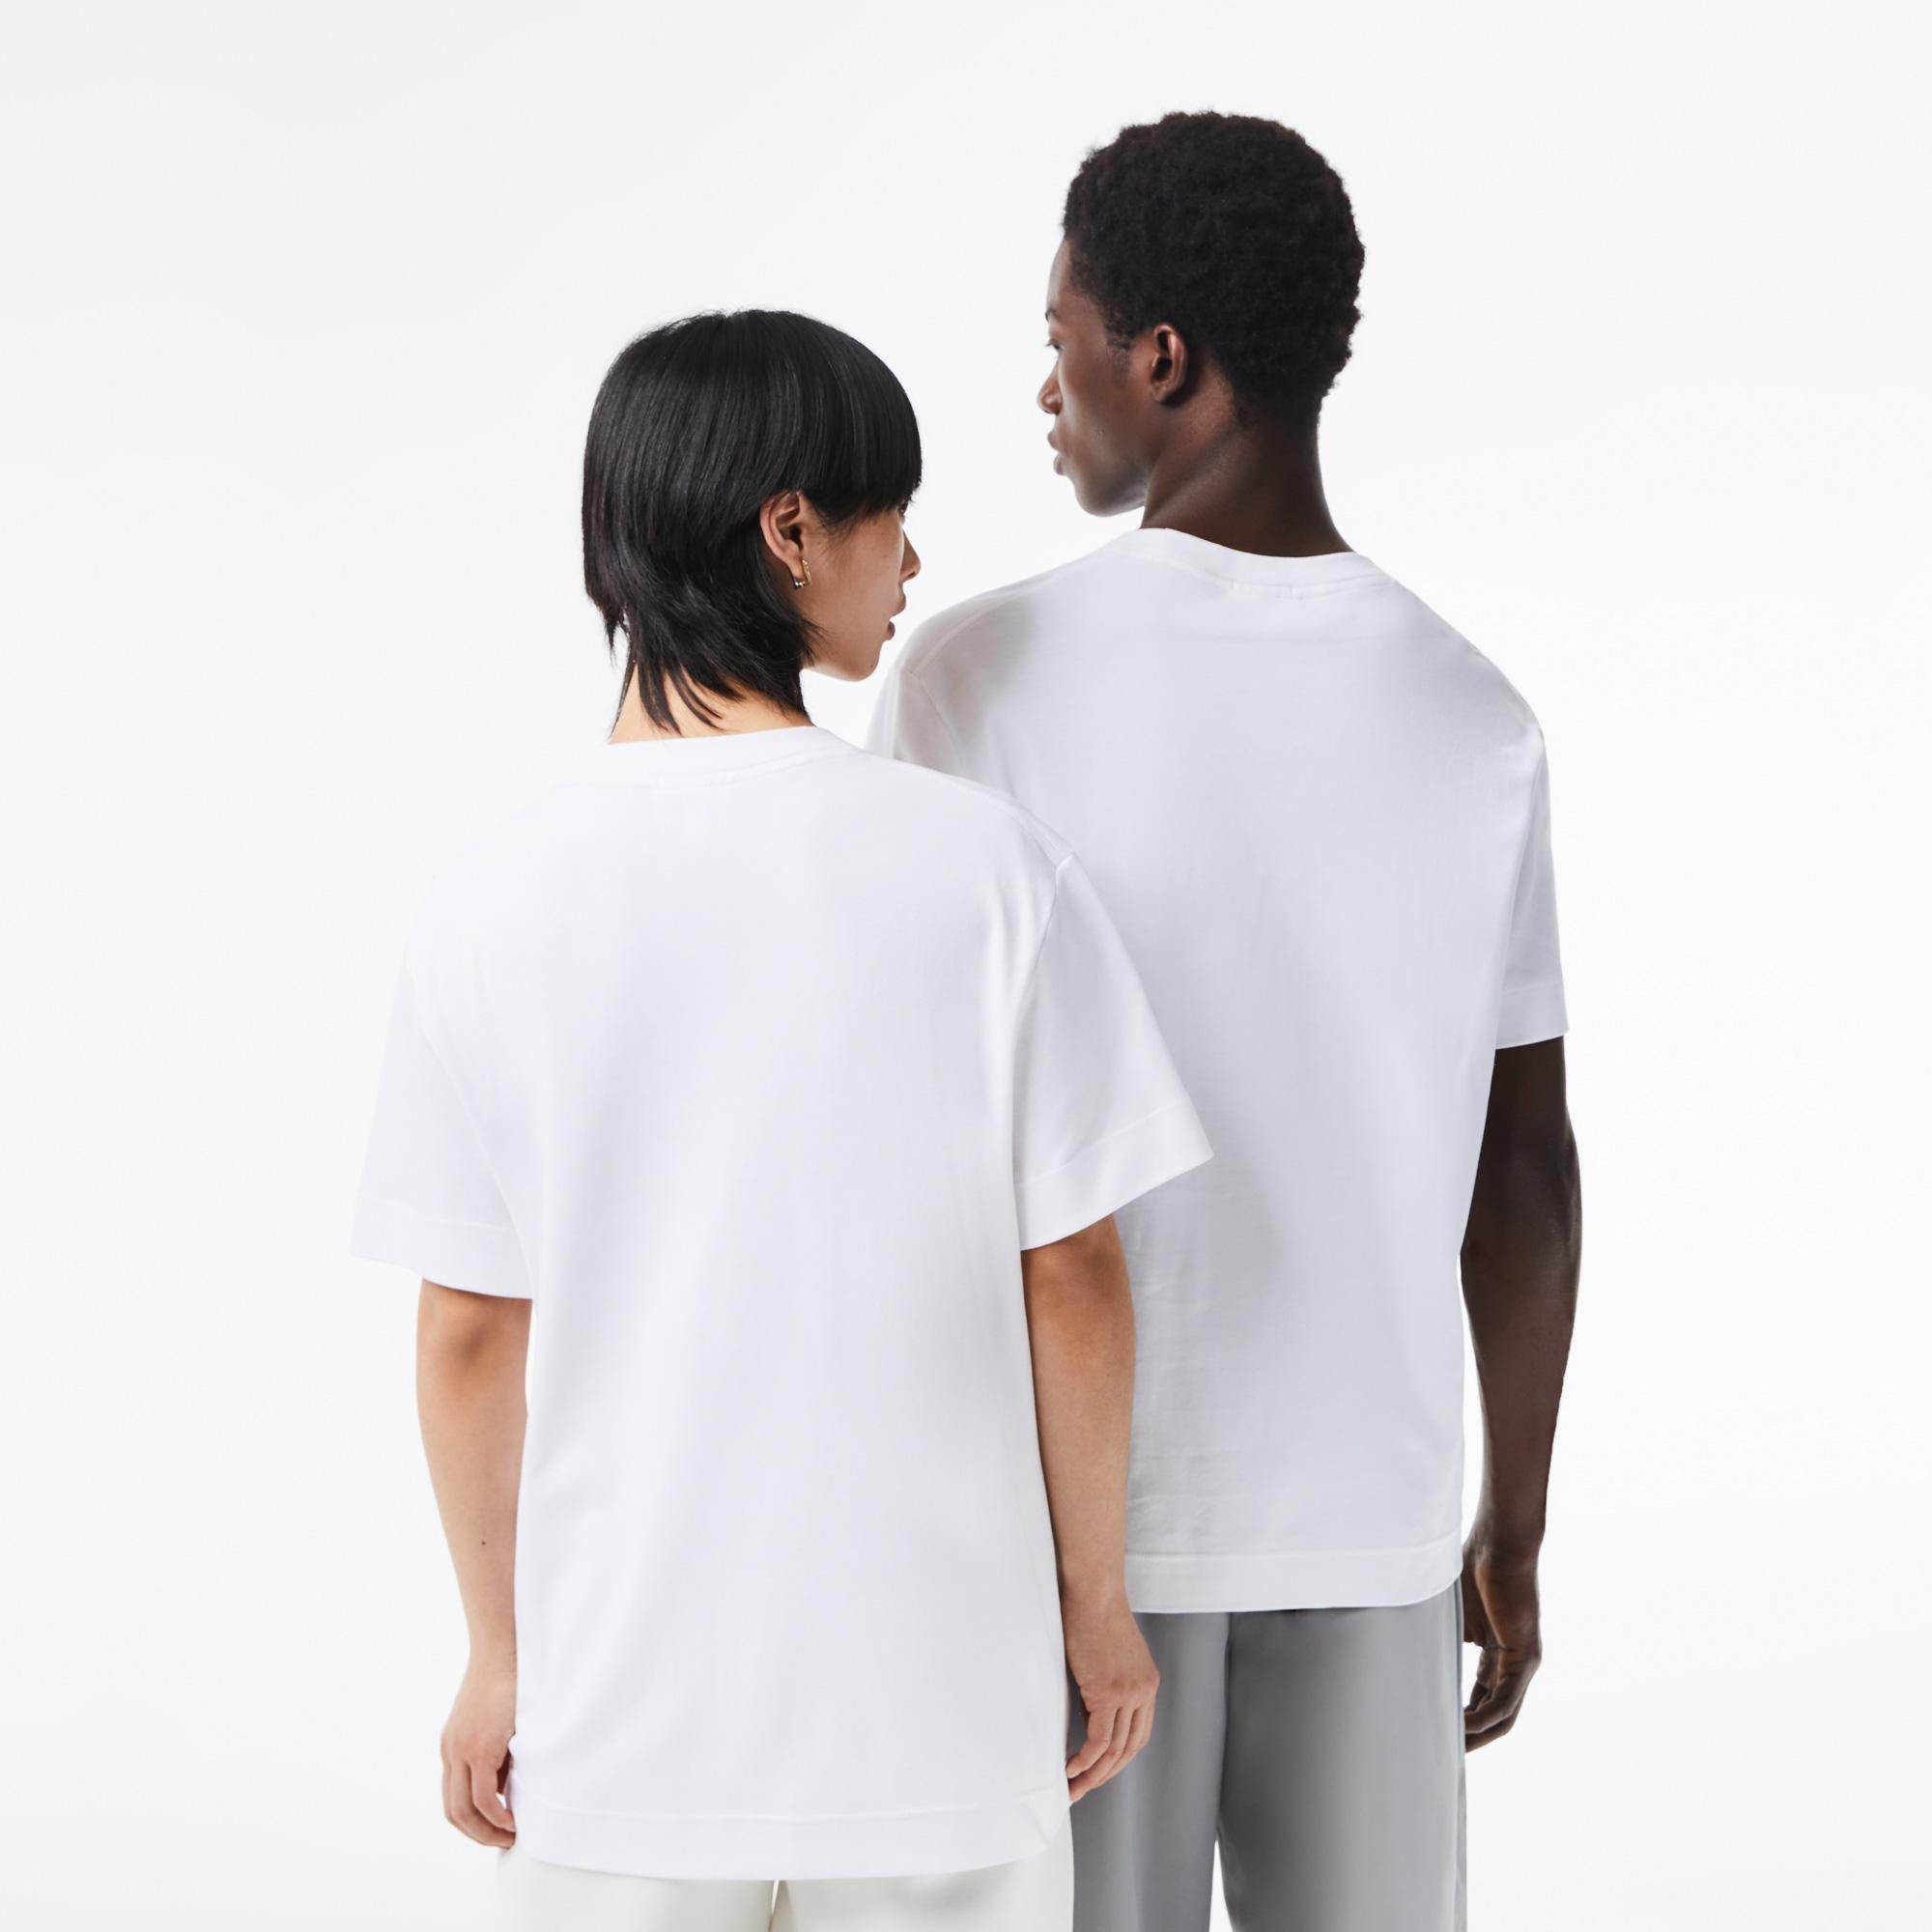 Lacoste Unisex tričko z organickej bavlny s okrúhlym výstrihom